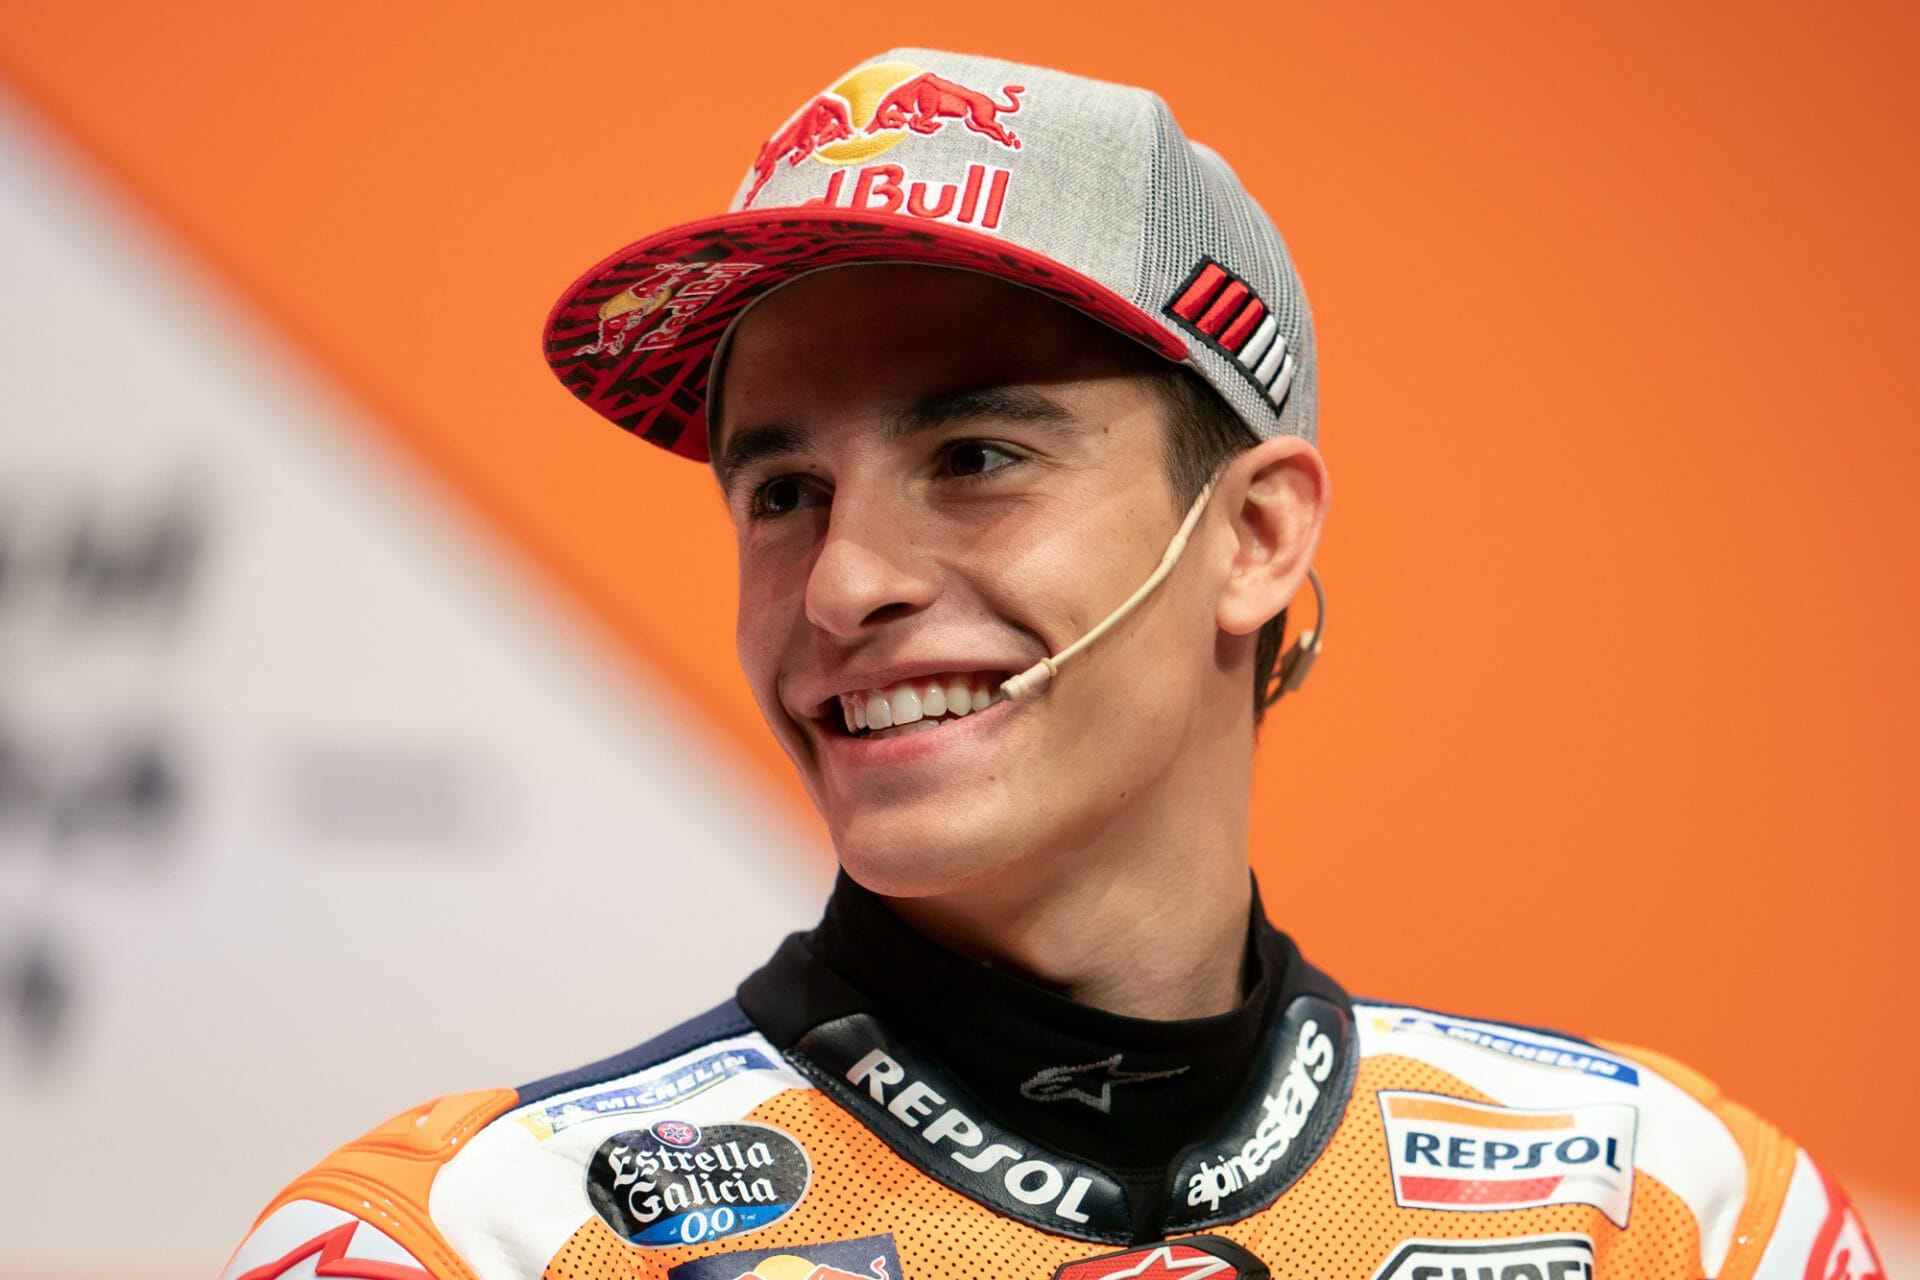 #MarcMarquez – Schulter-OP nach Sturz bei Jerez-Test nötig
- auch in der Motorrad Nachrichten App